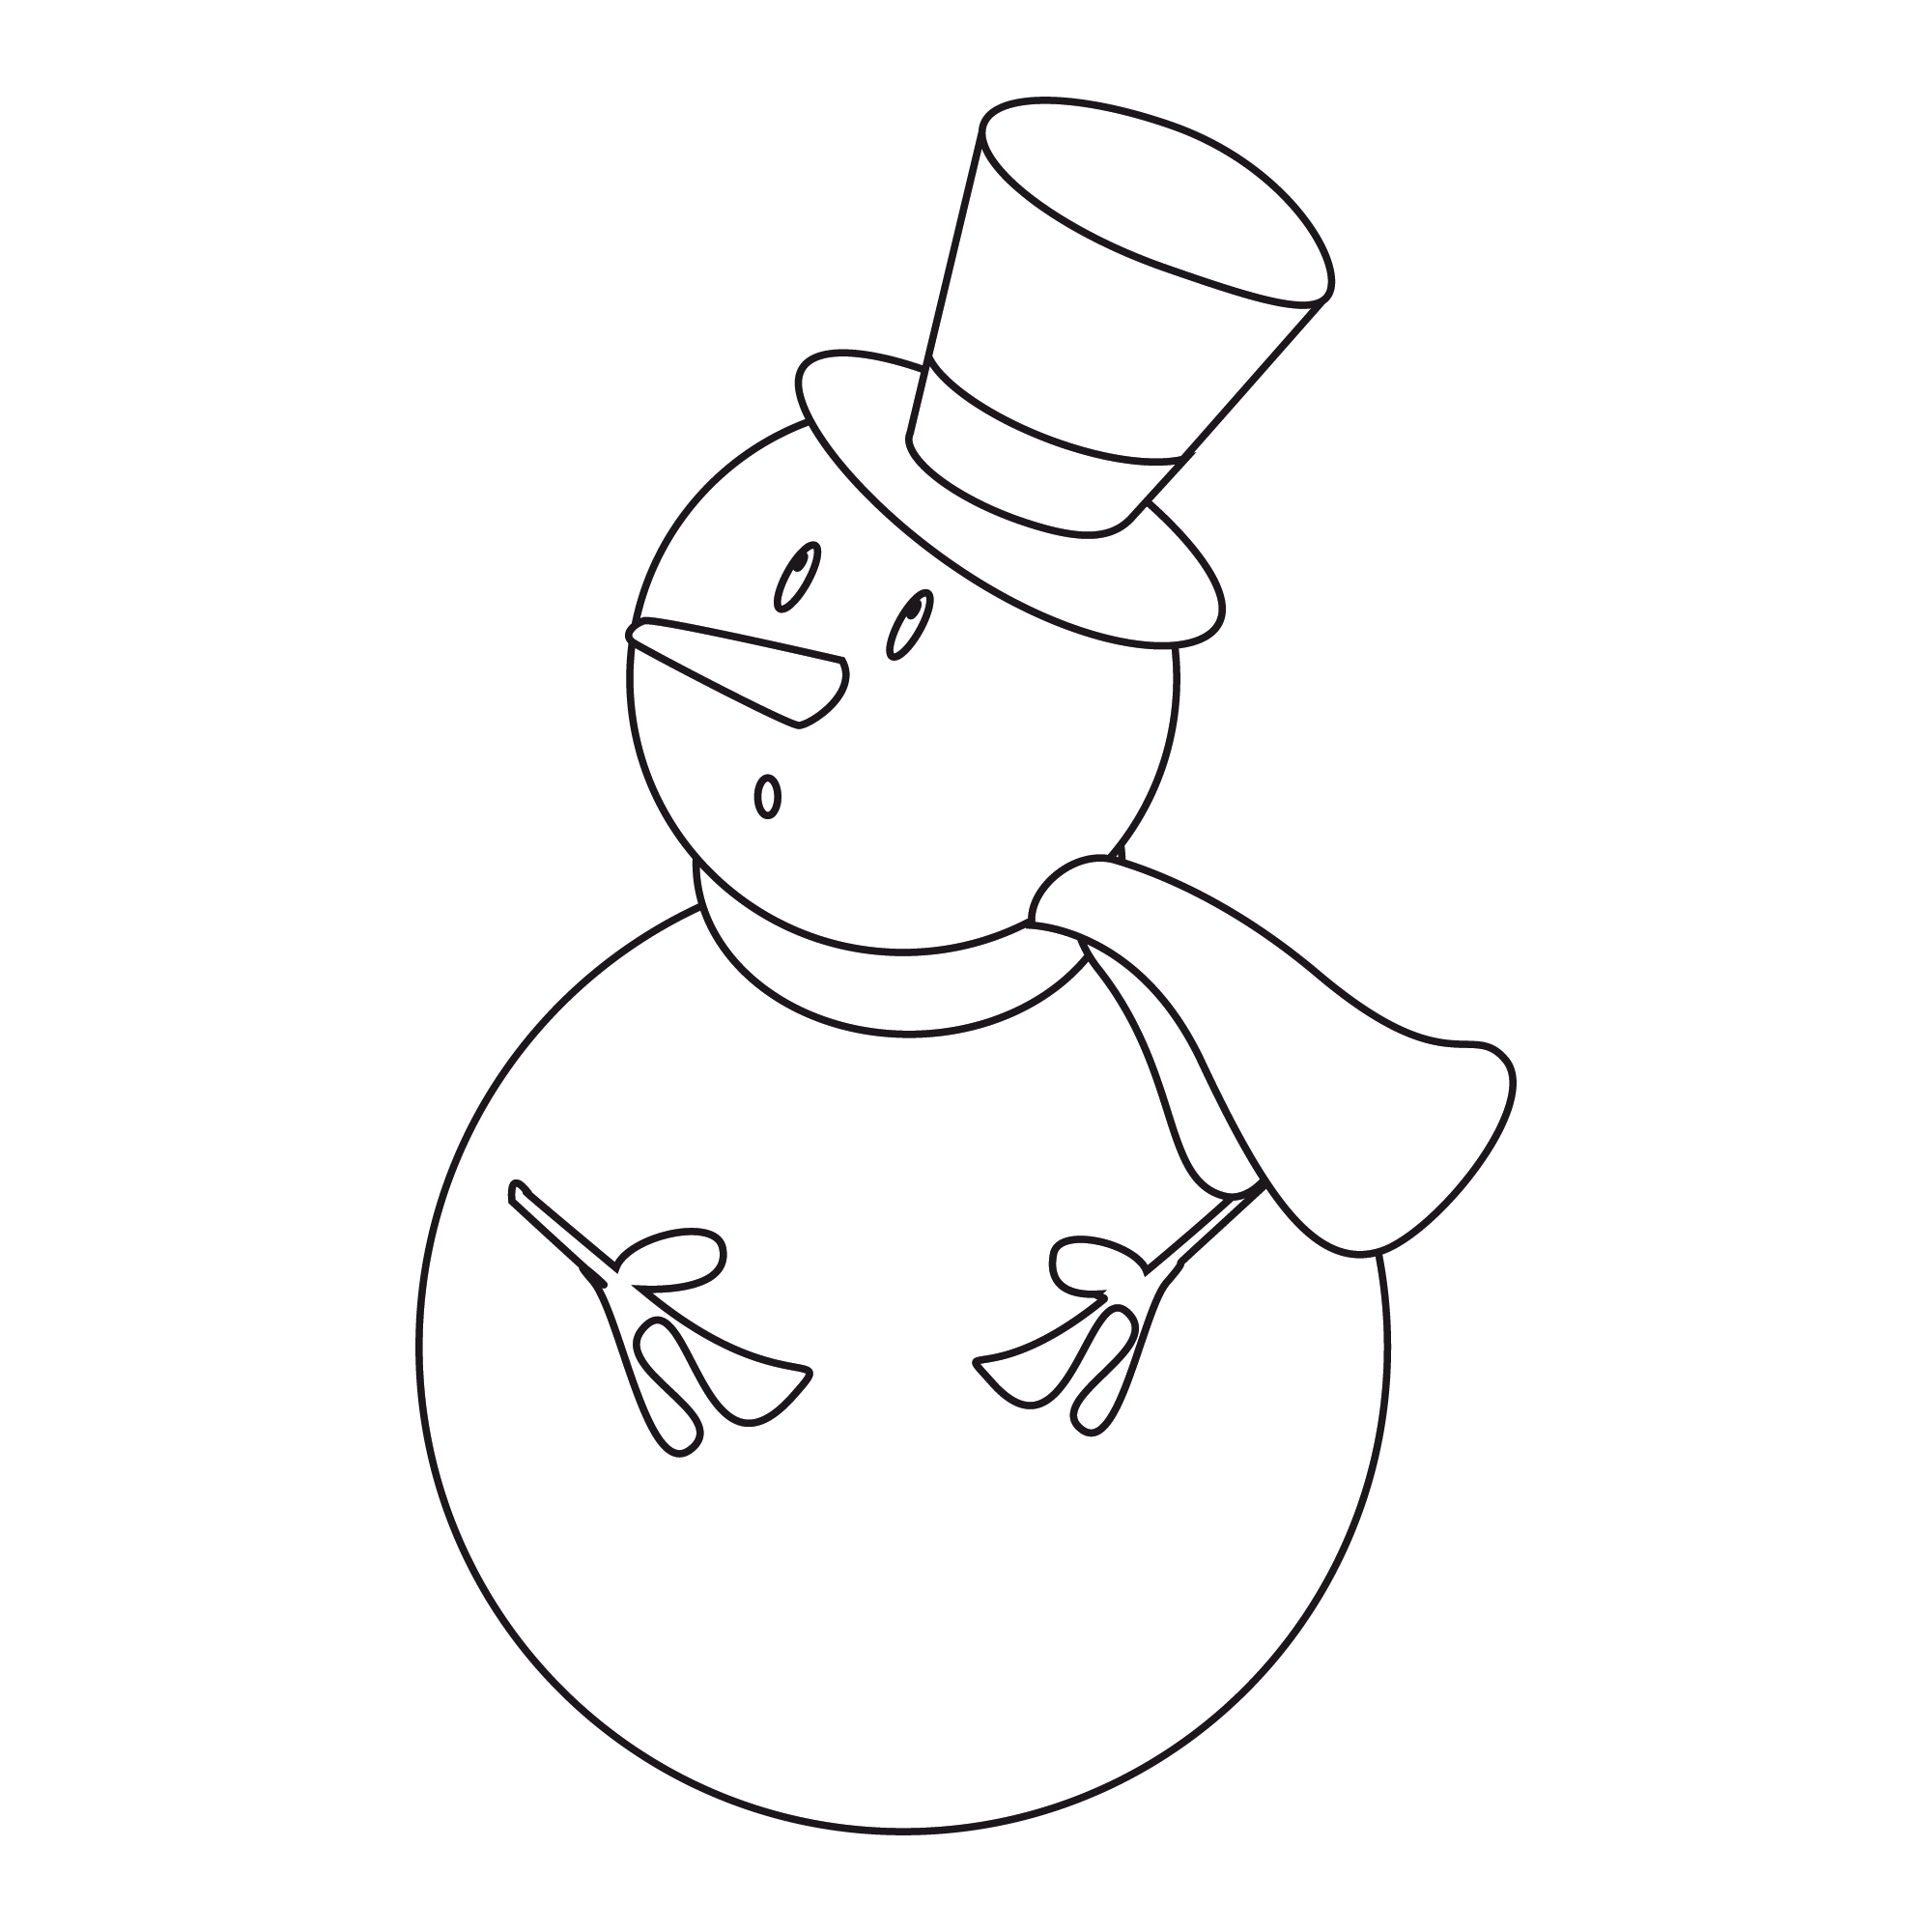 dessin magique bonhomme de neige